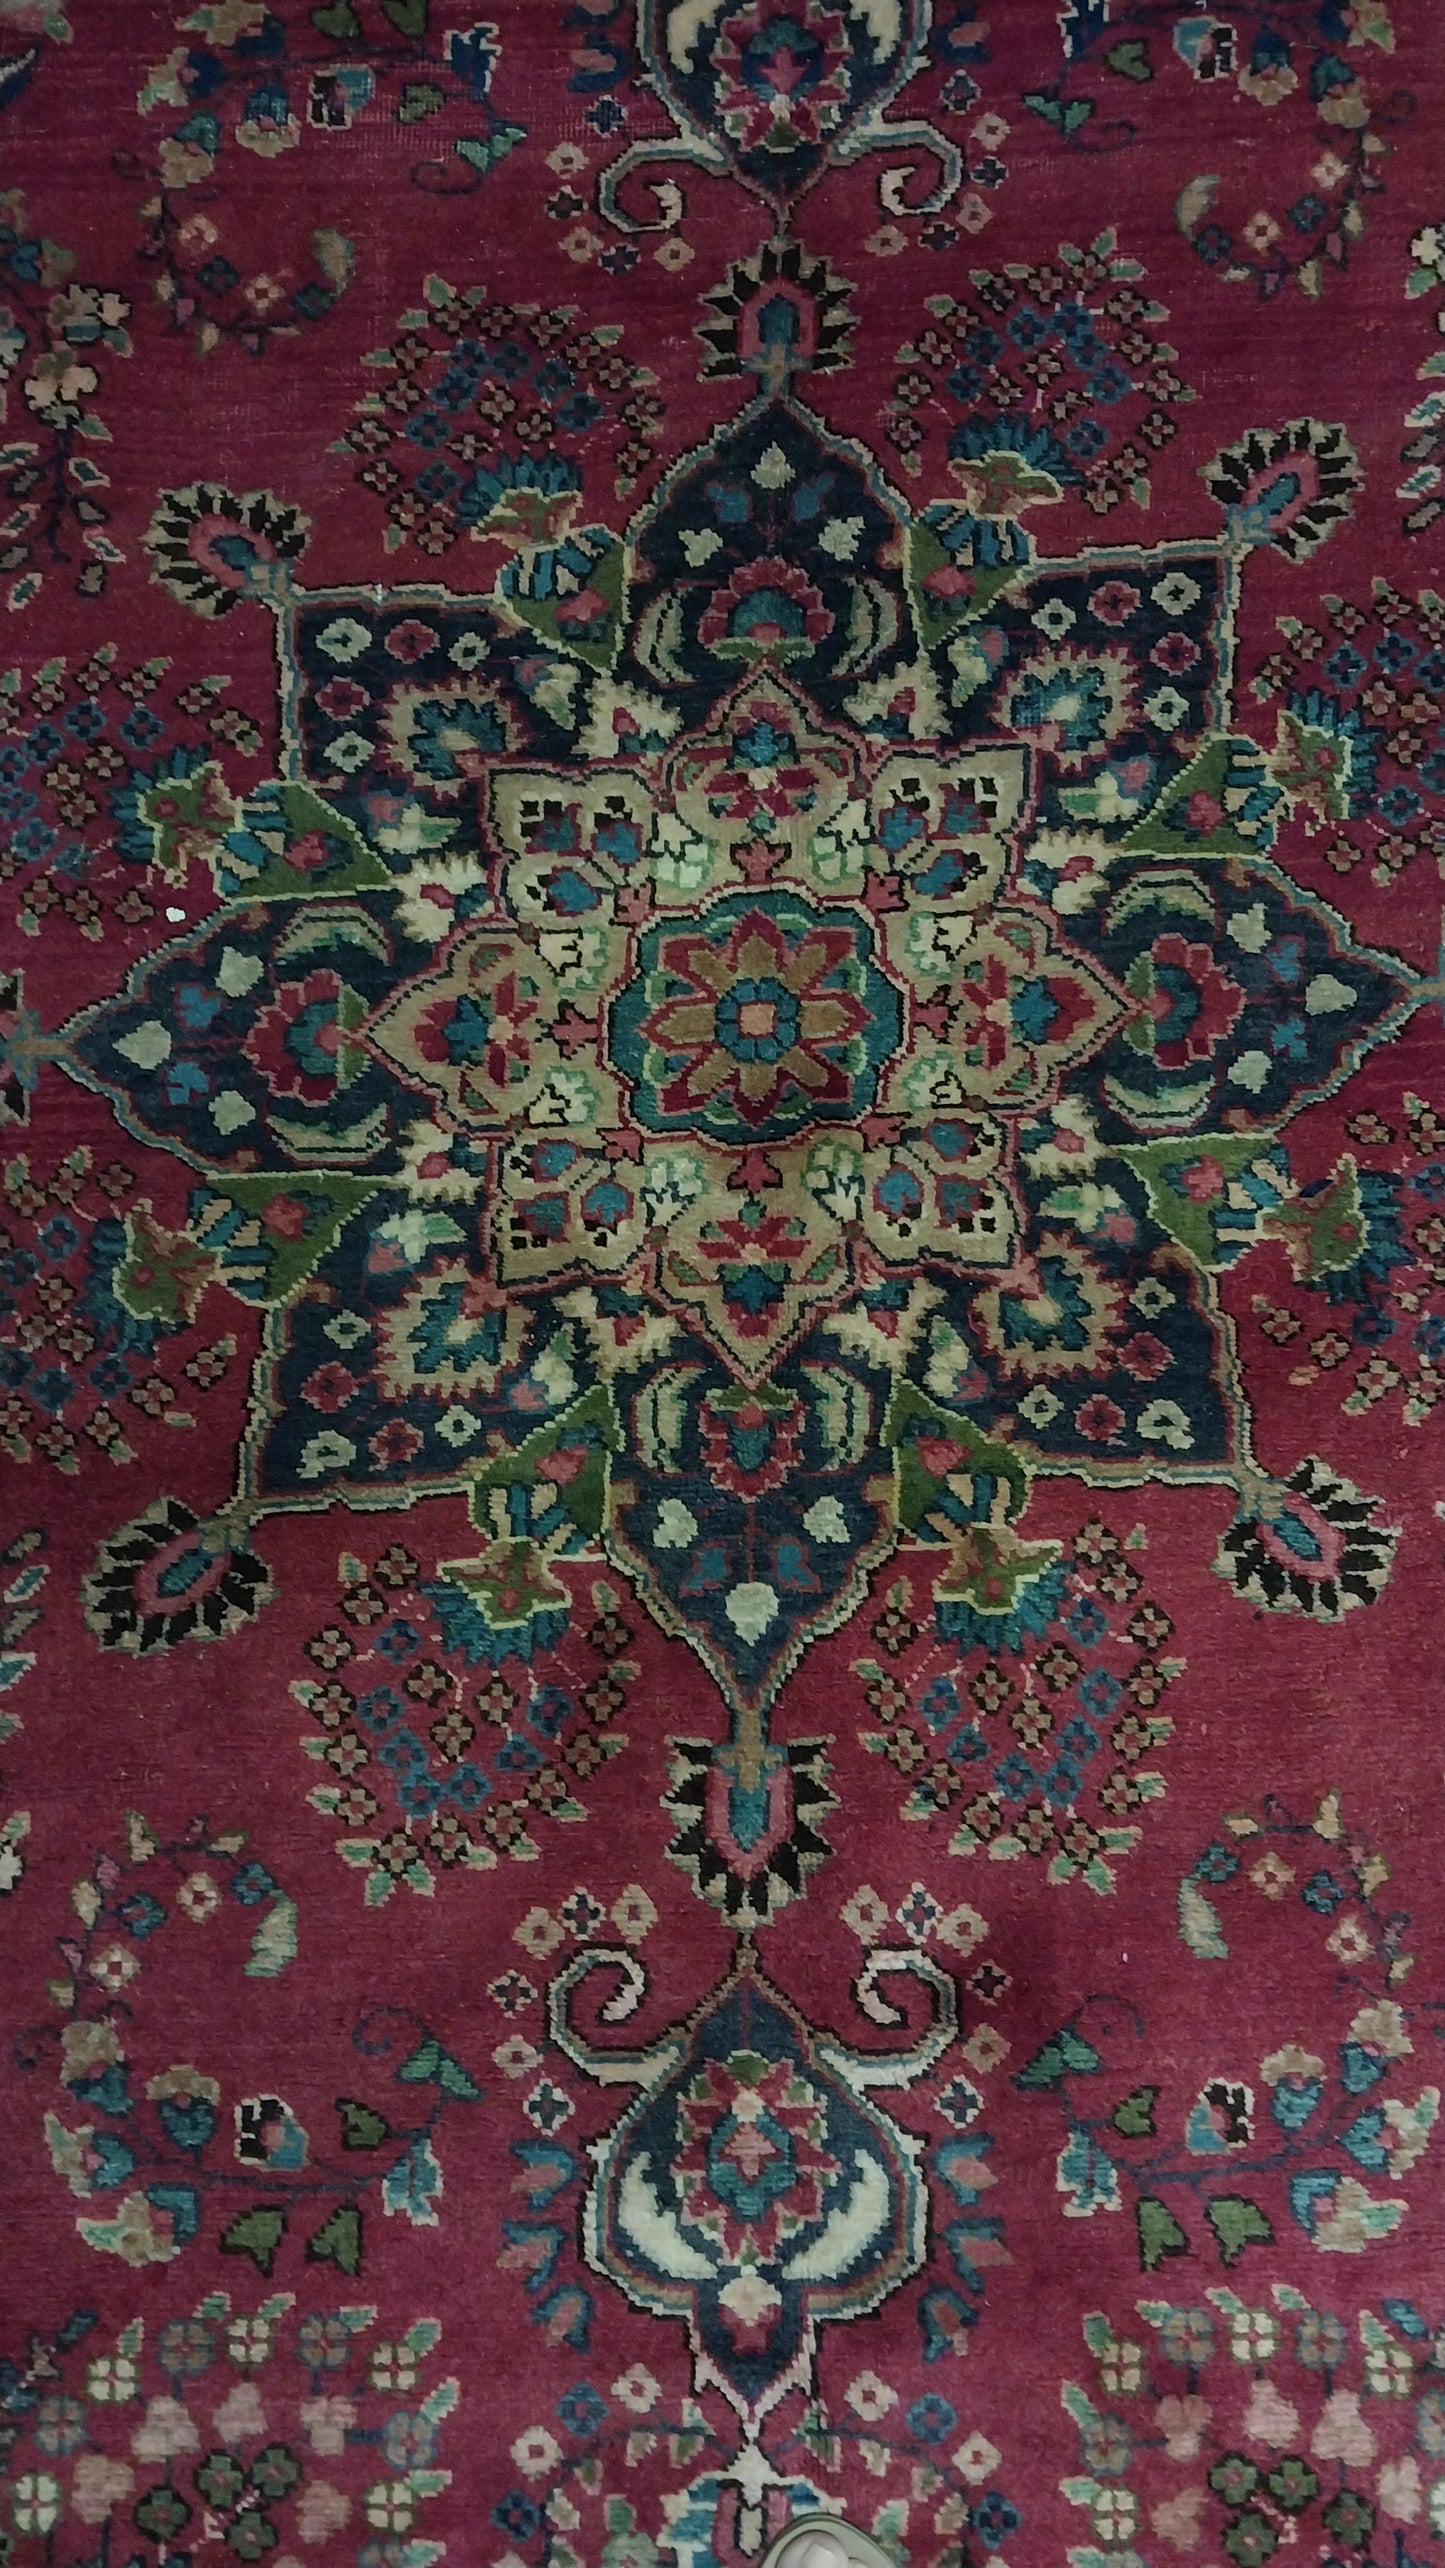 Persian carpet (305cm x 200cm)